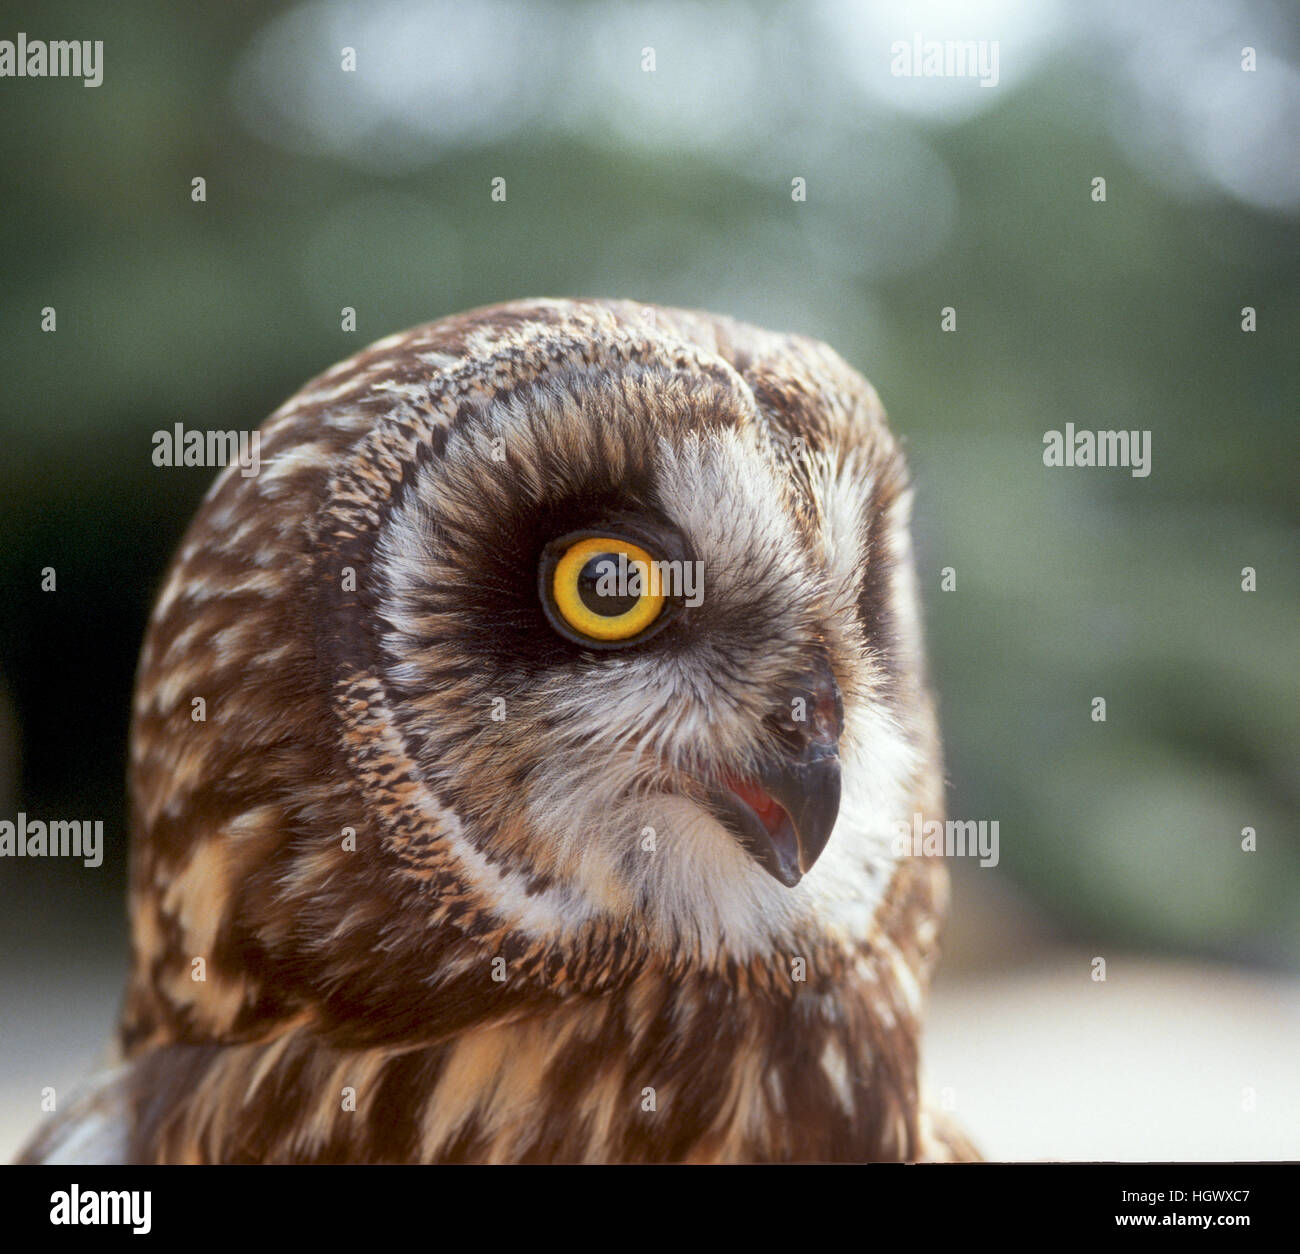 Short-eared owl with big eye Stock Photo